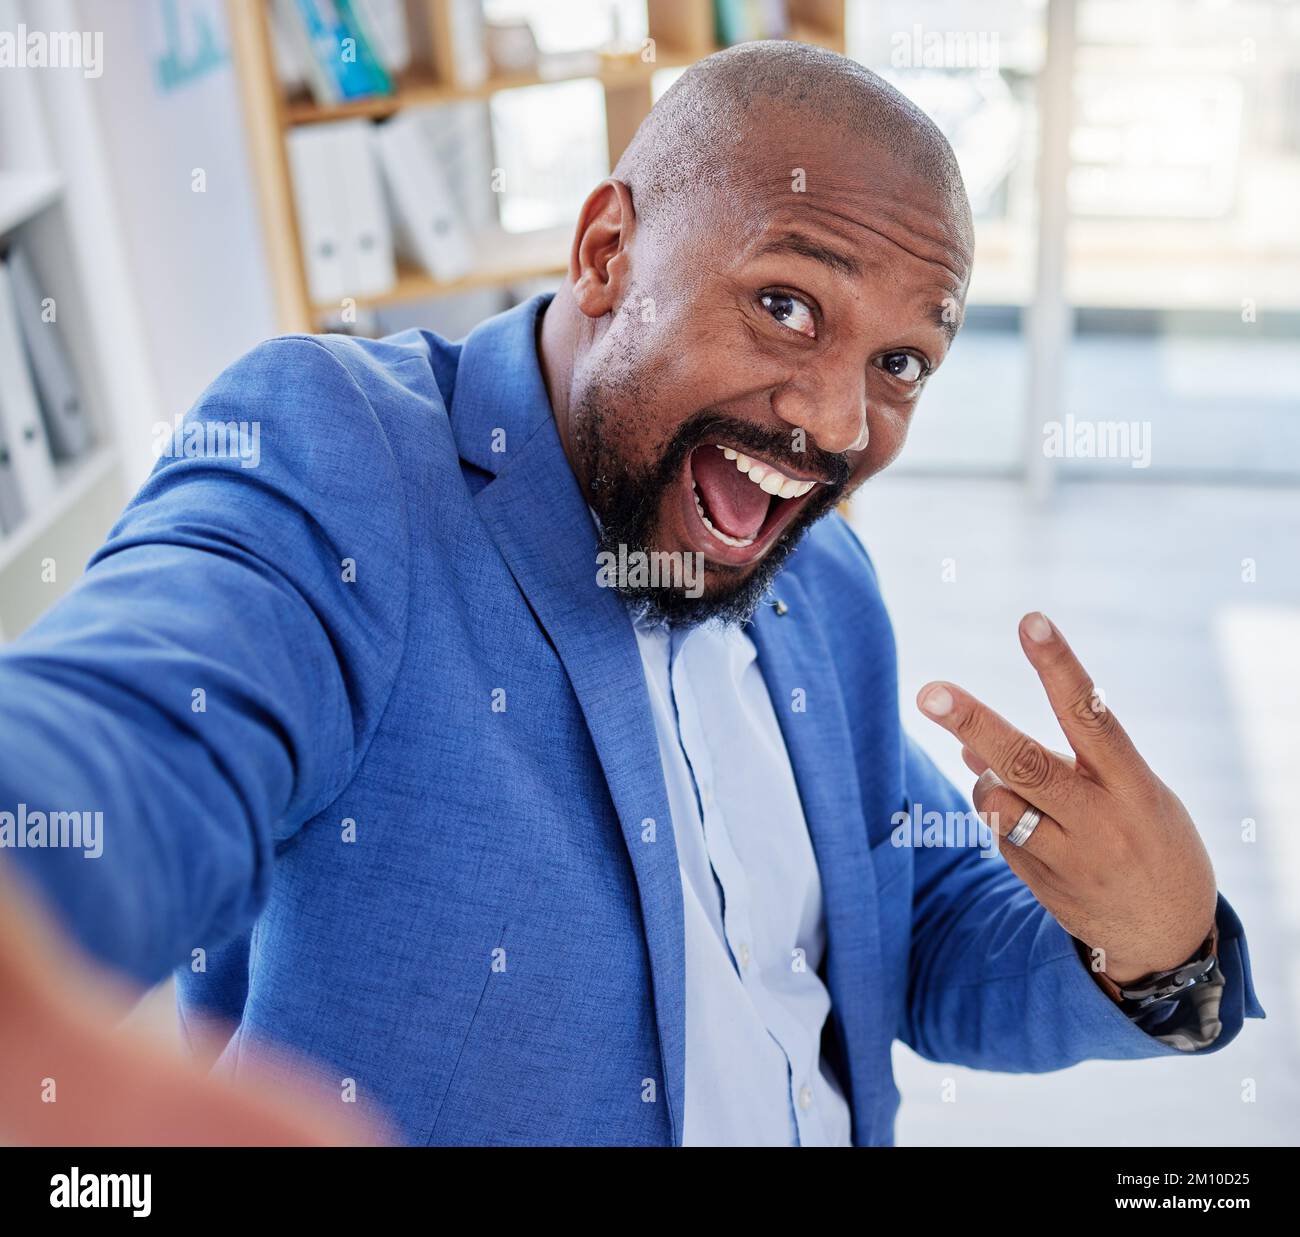 Photo de stock L'homme fait du selfie en quad 1649149630